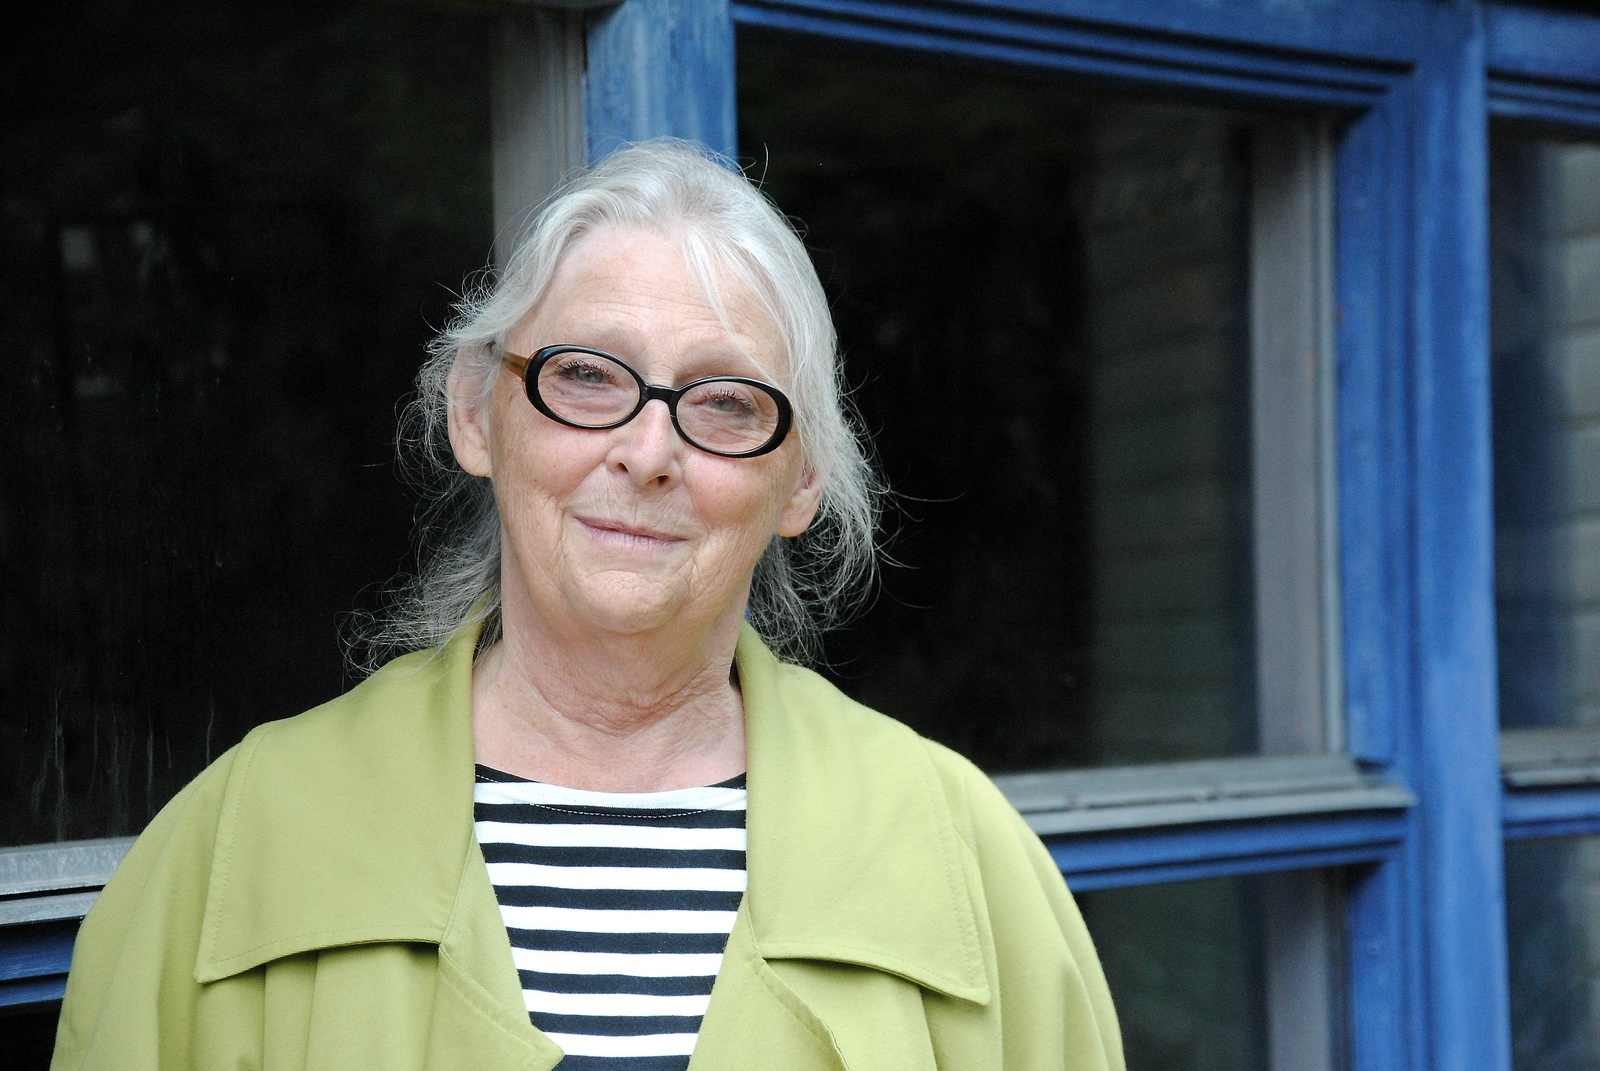 Margareta Larson vill slå vakt om berättandet.
Foto: Håkan Jacobsson